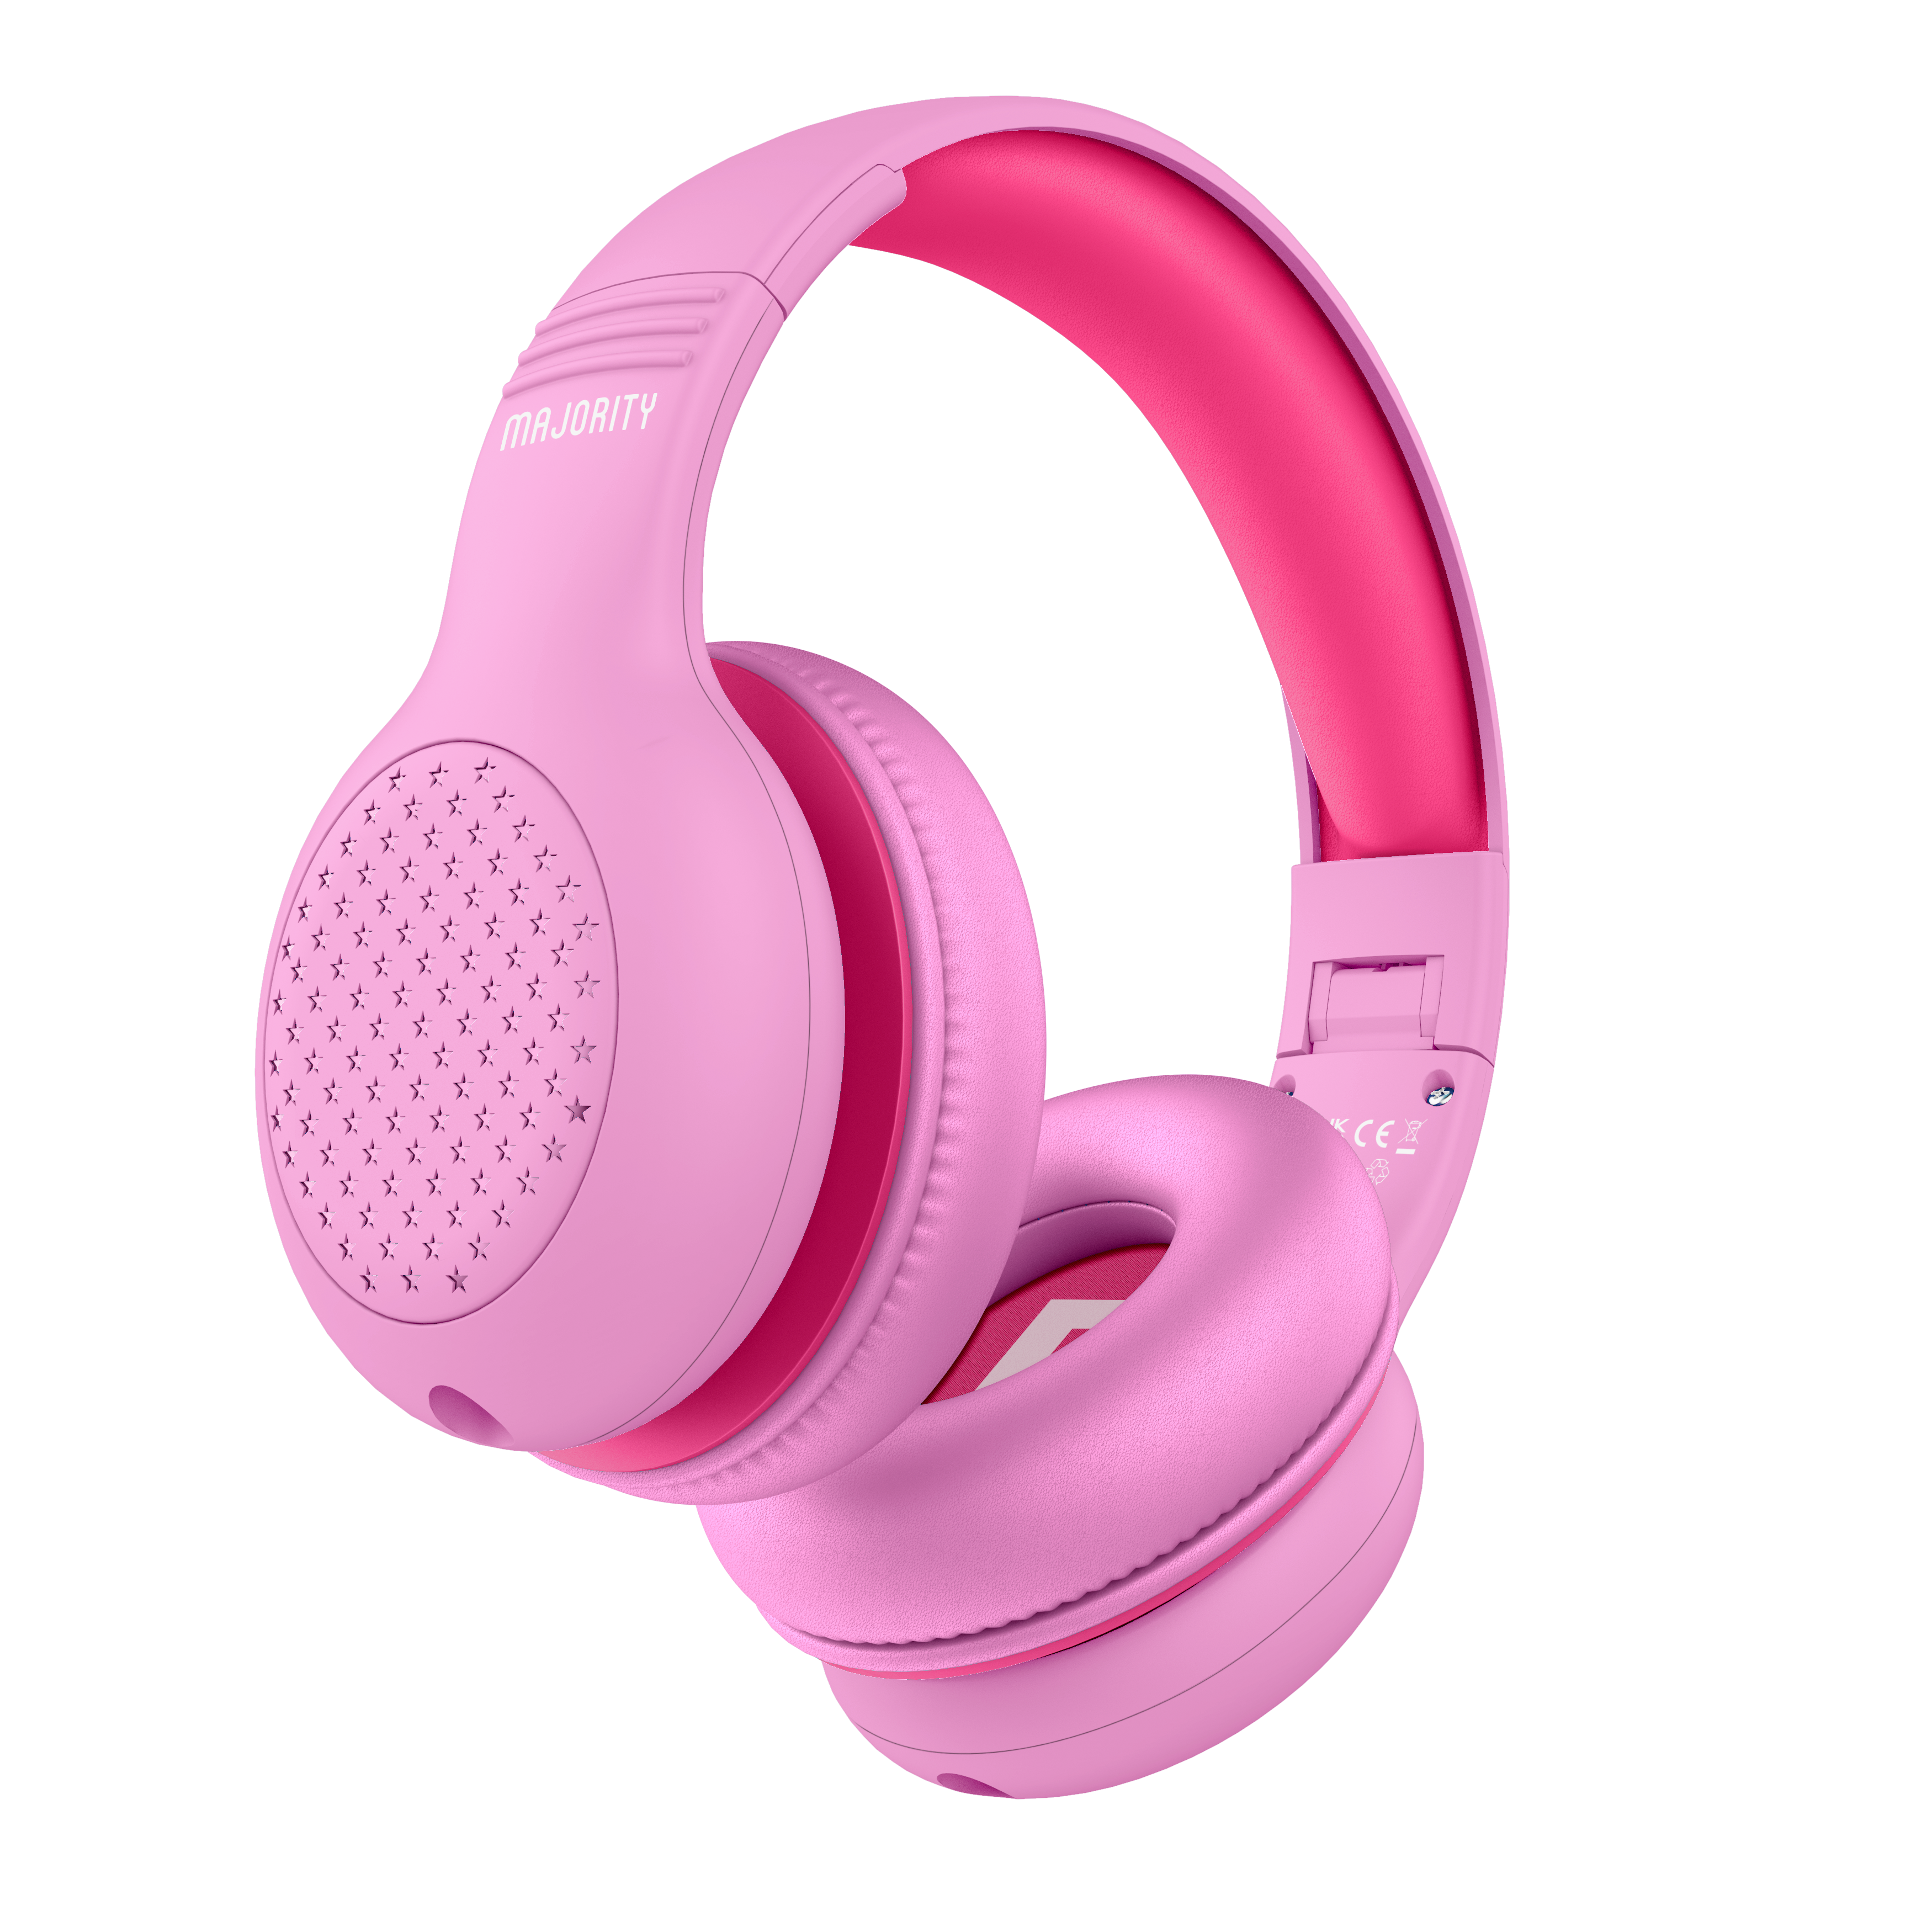 Majority Superstar Kids Headphones - Pink 2